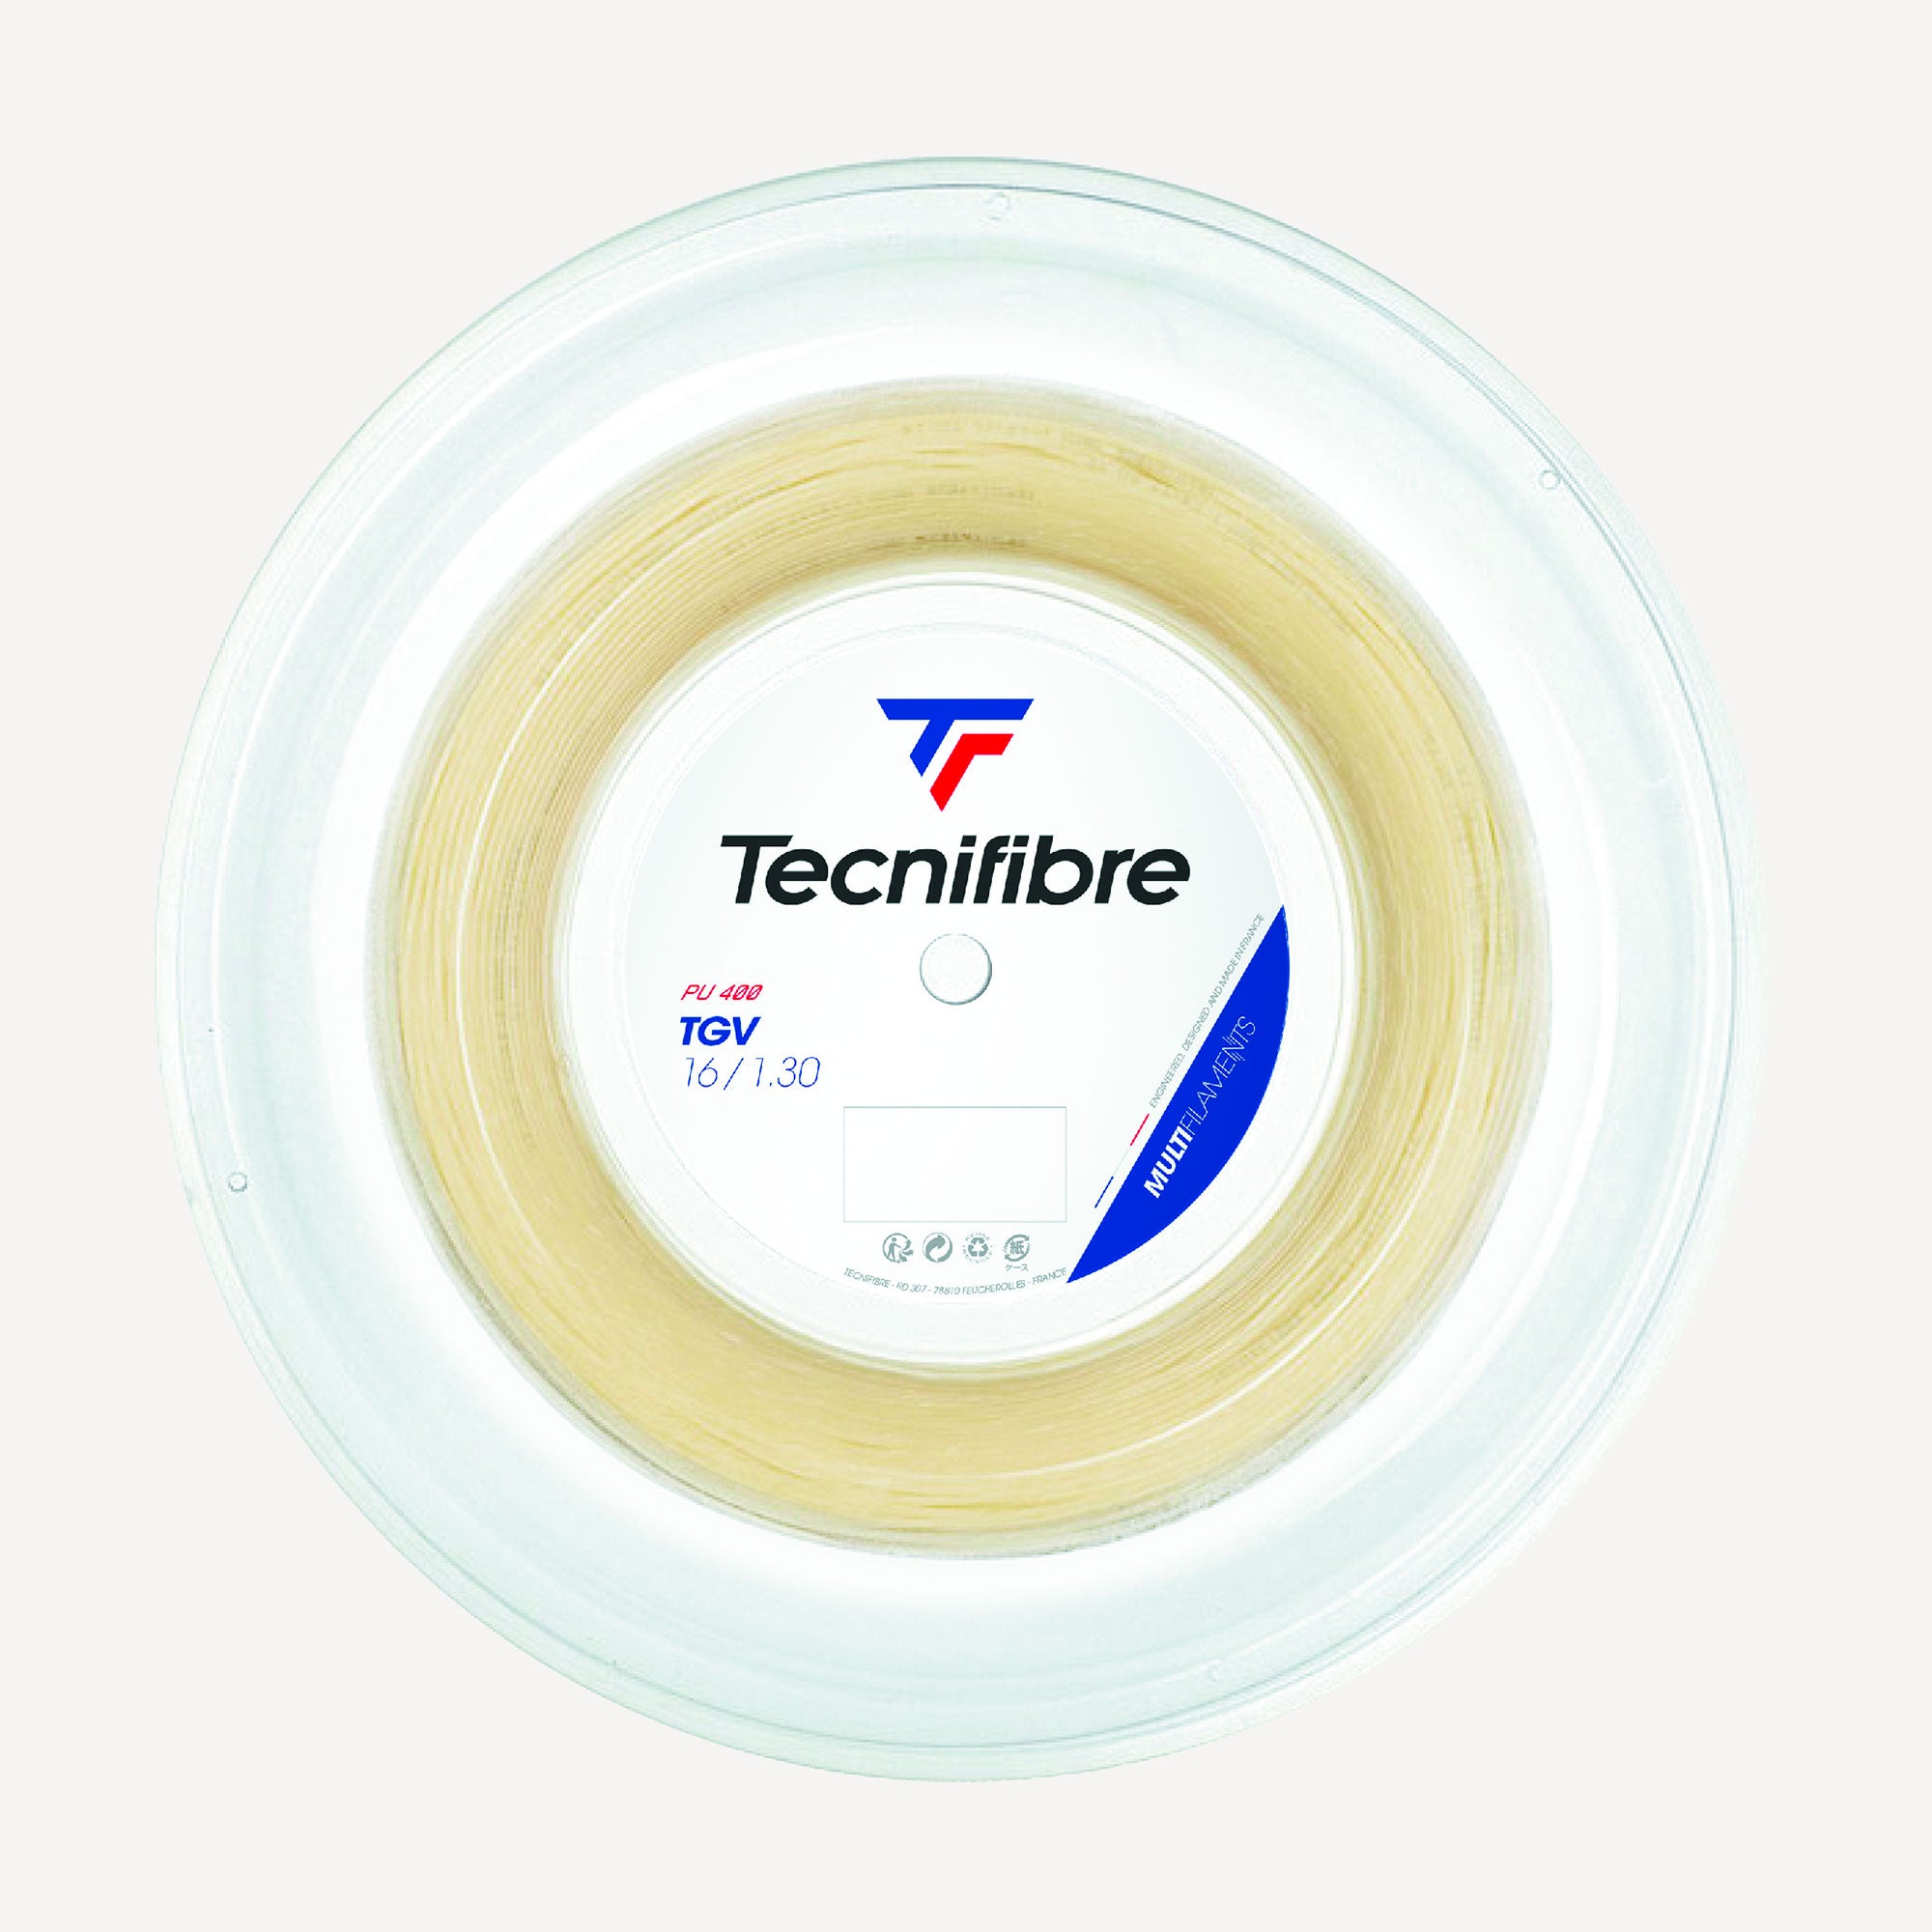 Tecnifibre TGV Tennis String Reel 200 m - Natural (1)